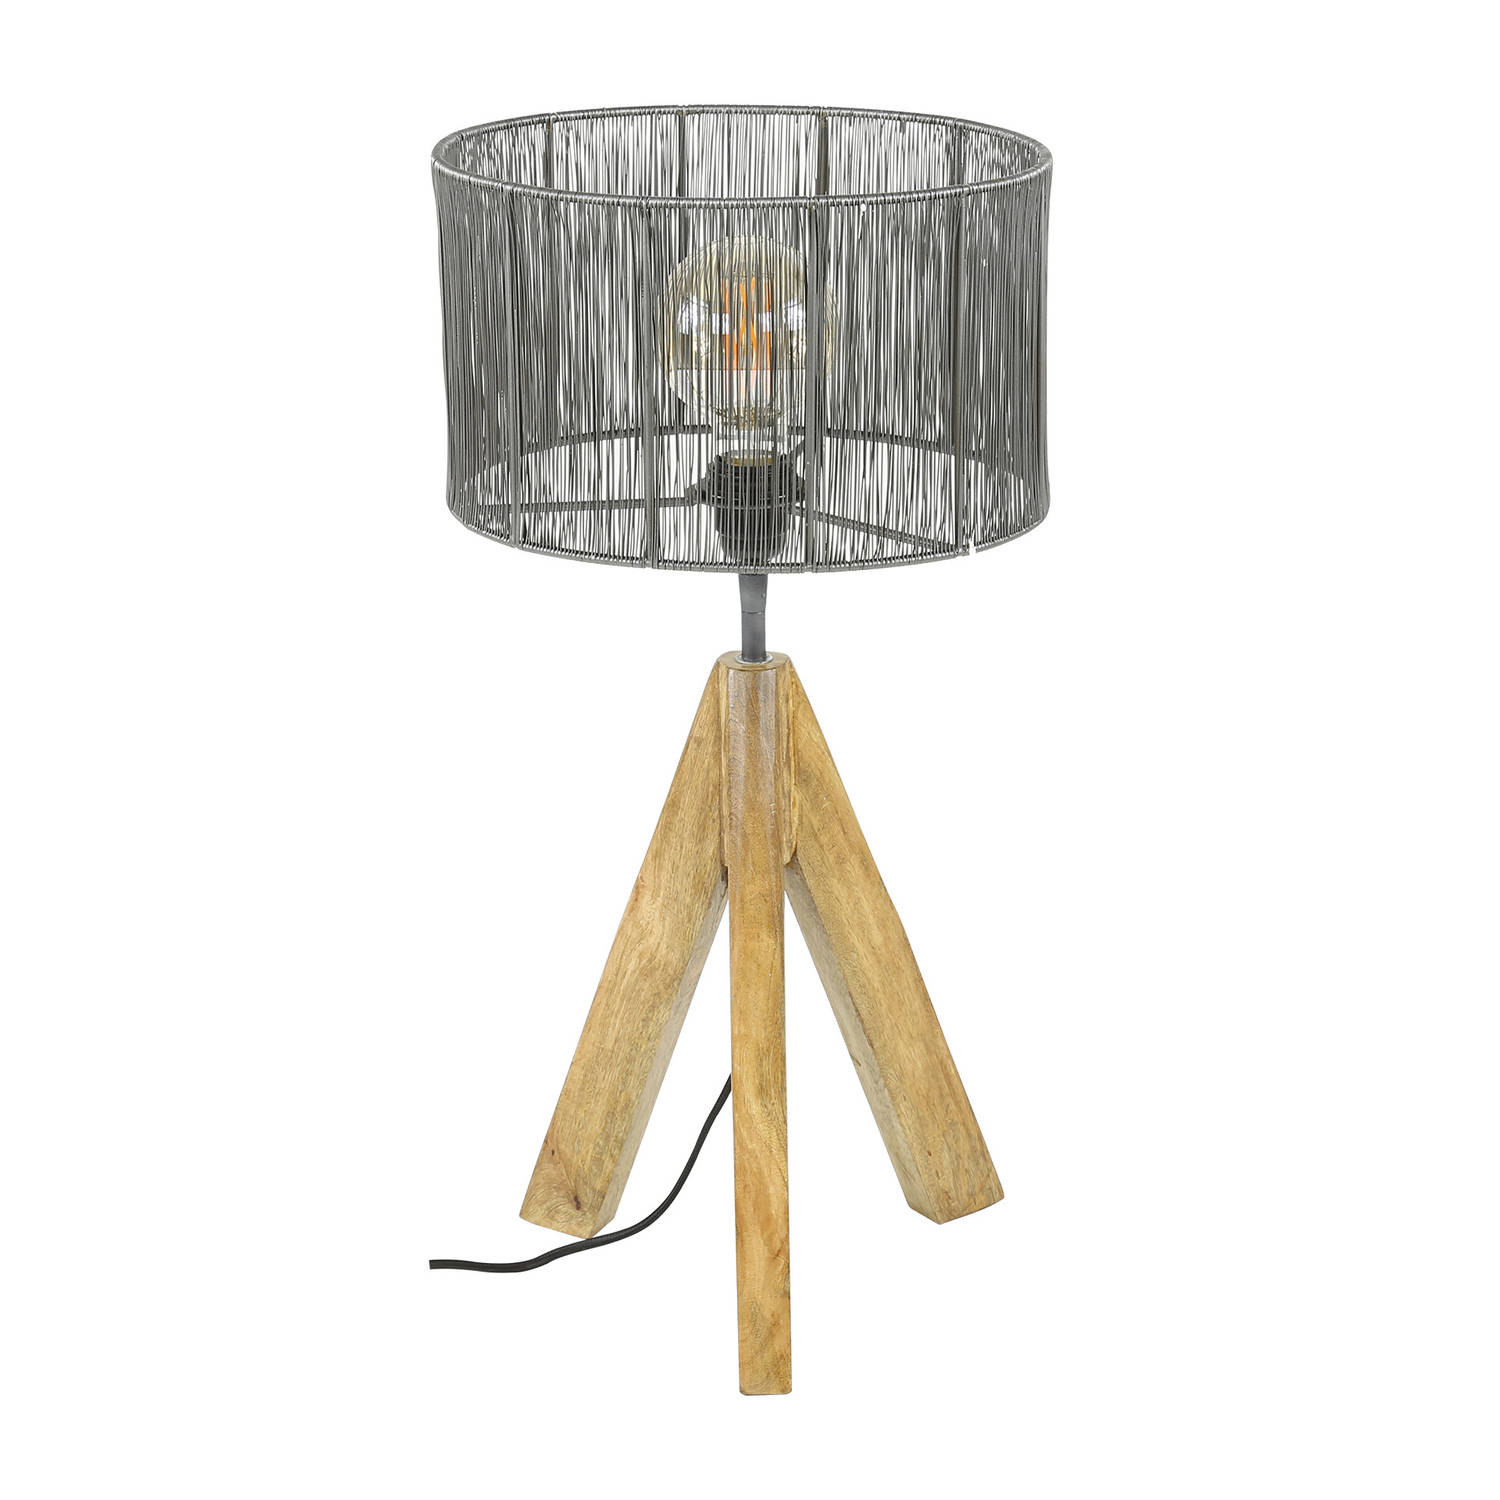 Giga Meubel Gm Tafellamp Ø30cm - Hout & Metaal - Lamp Tripod Wood